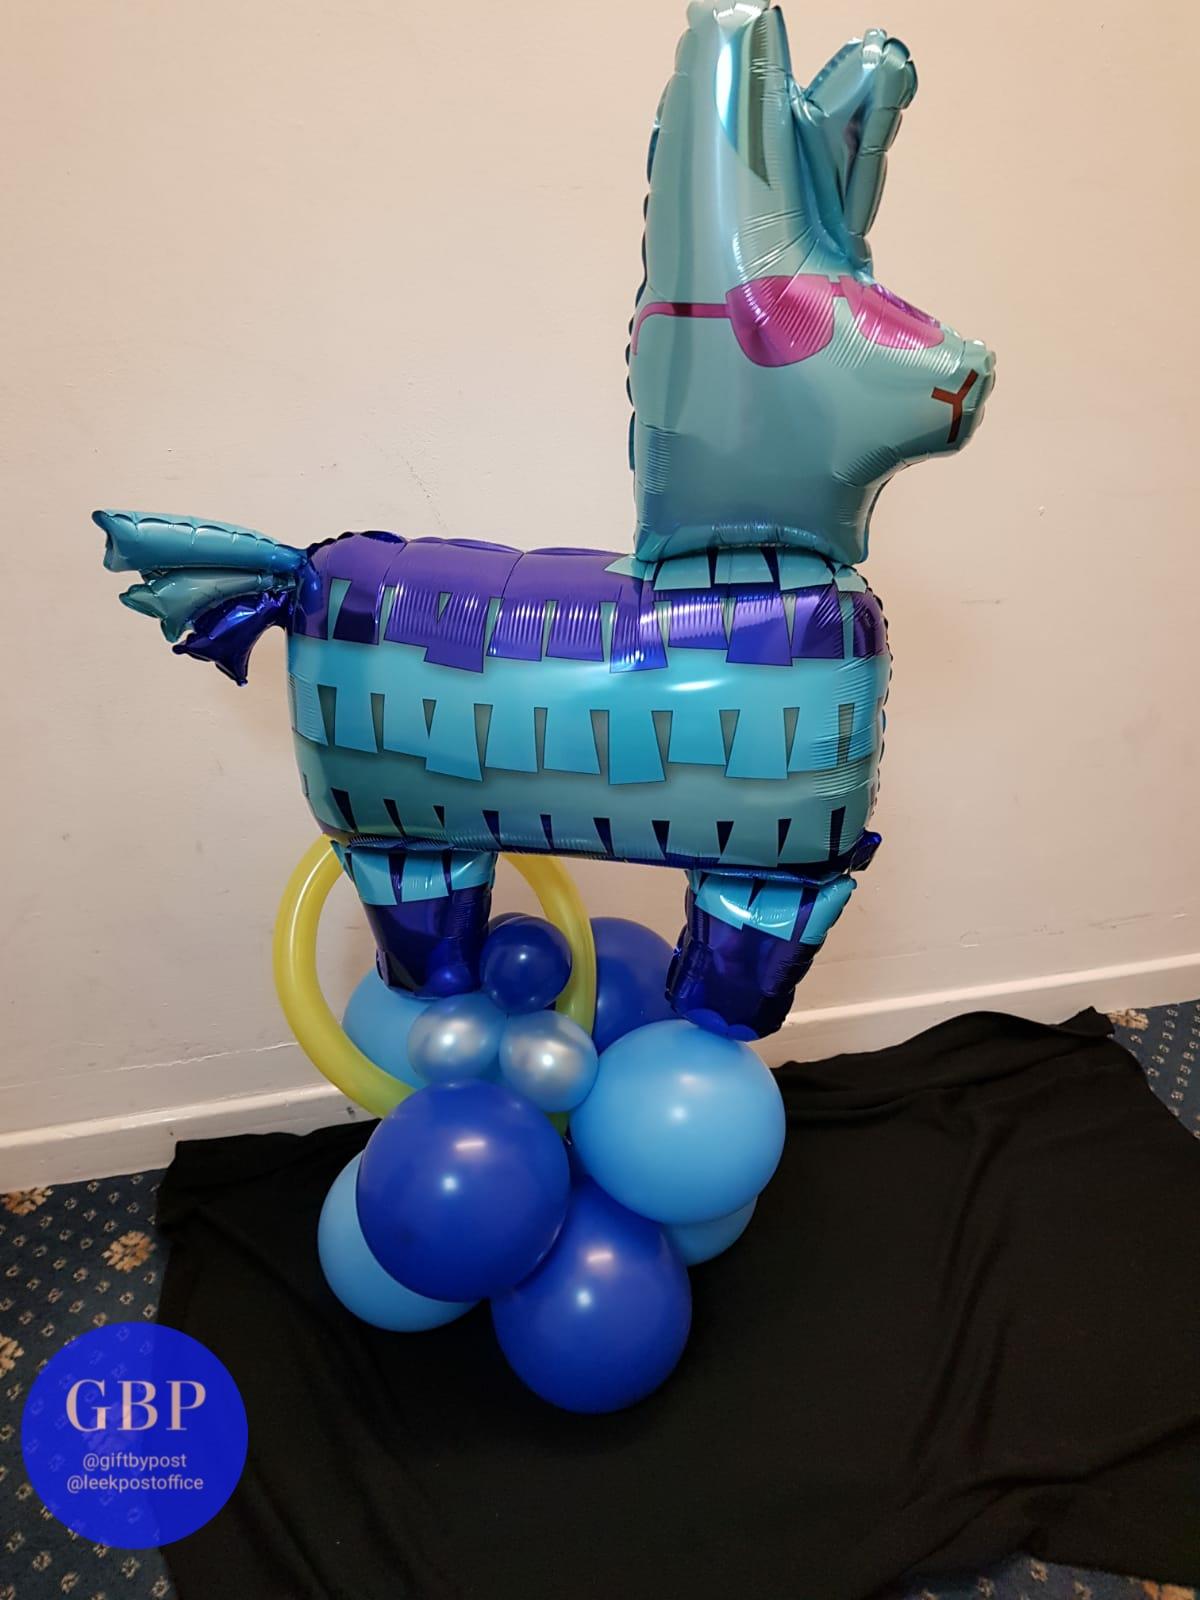 Fortnite Llama on a base of balloons